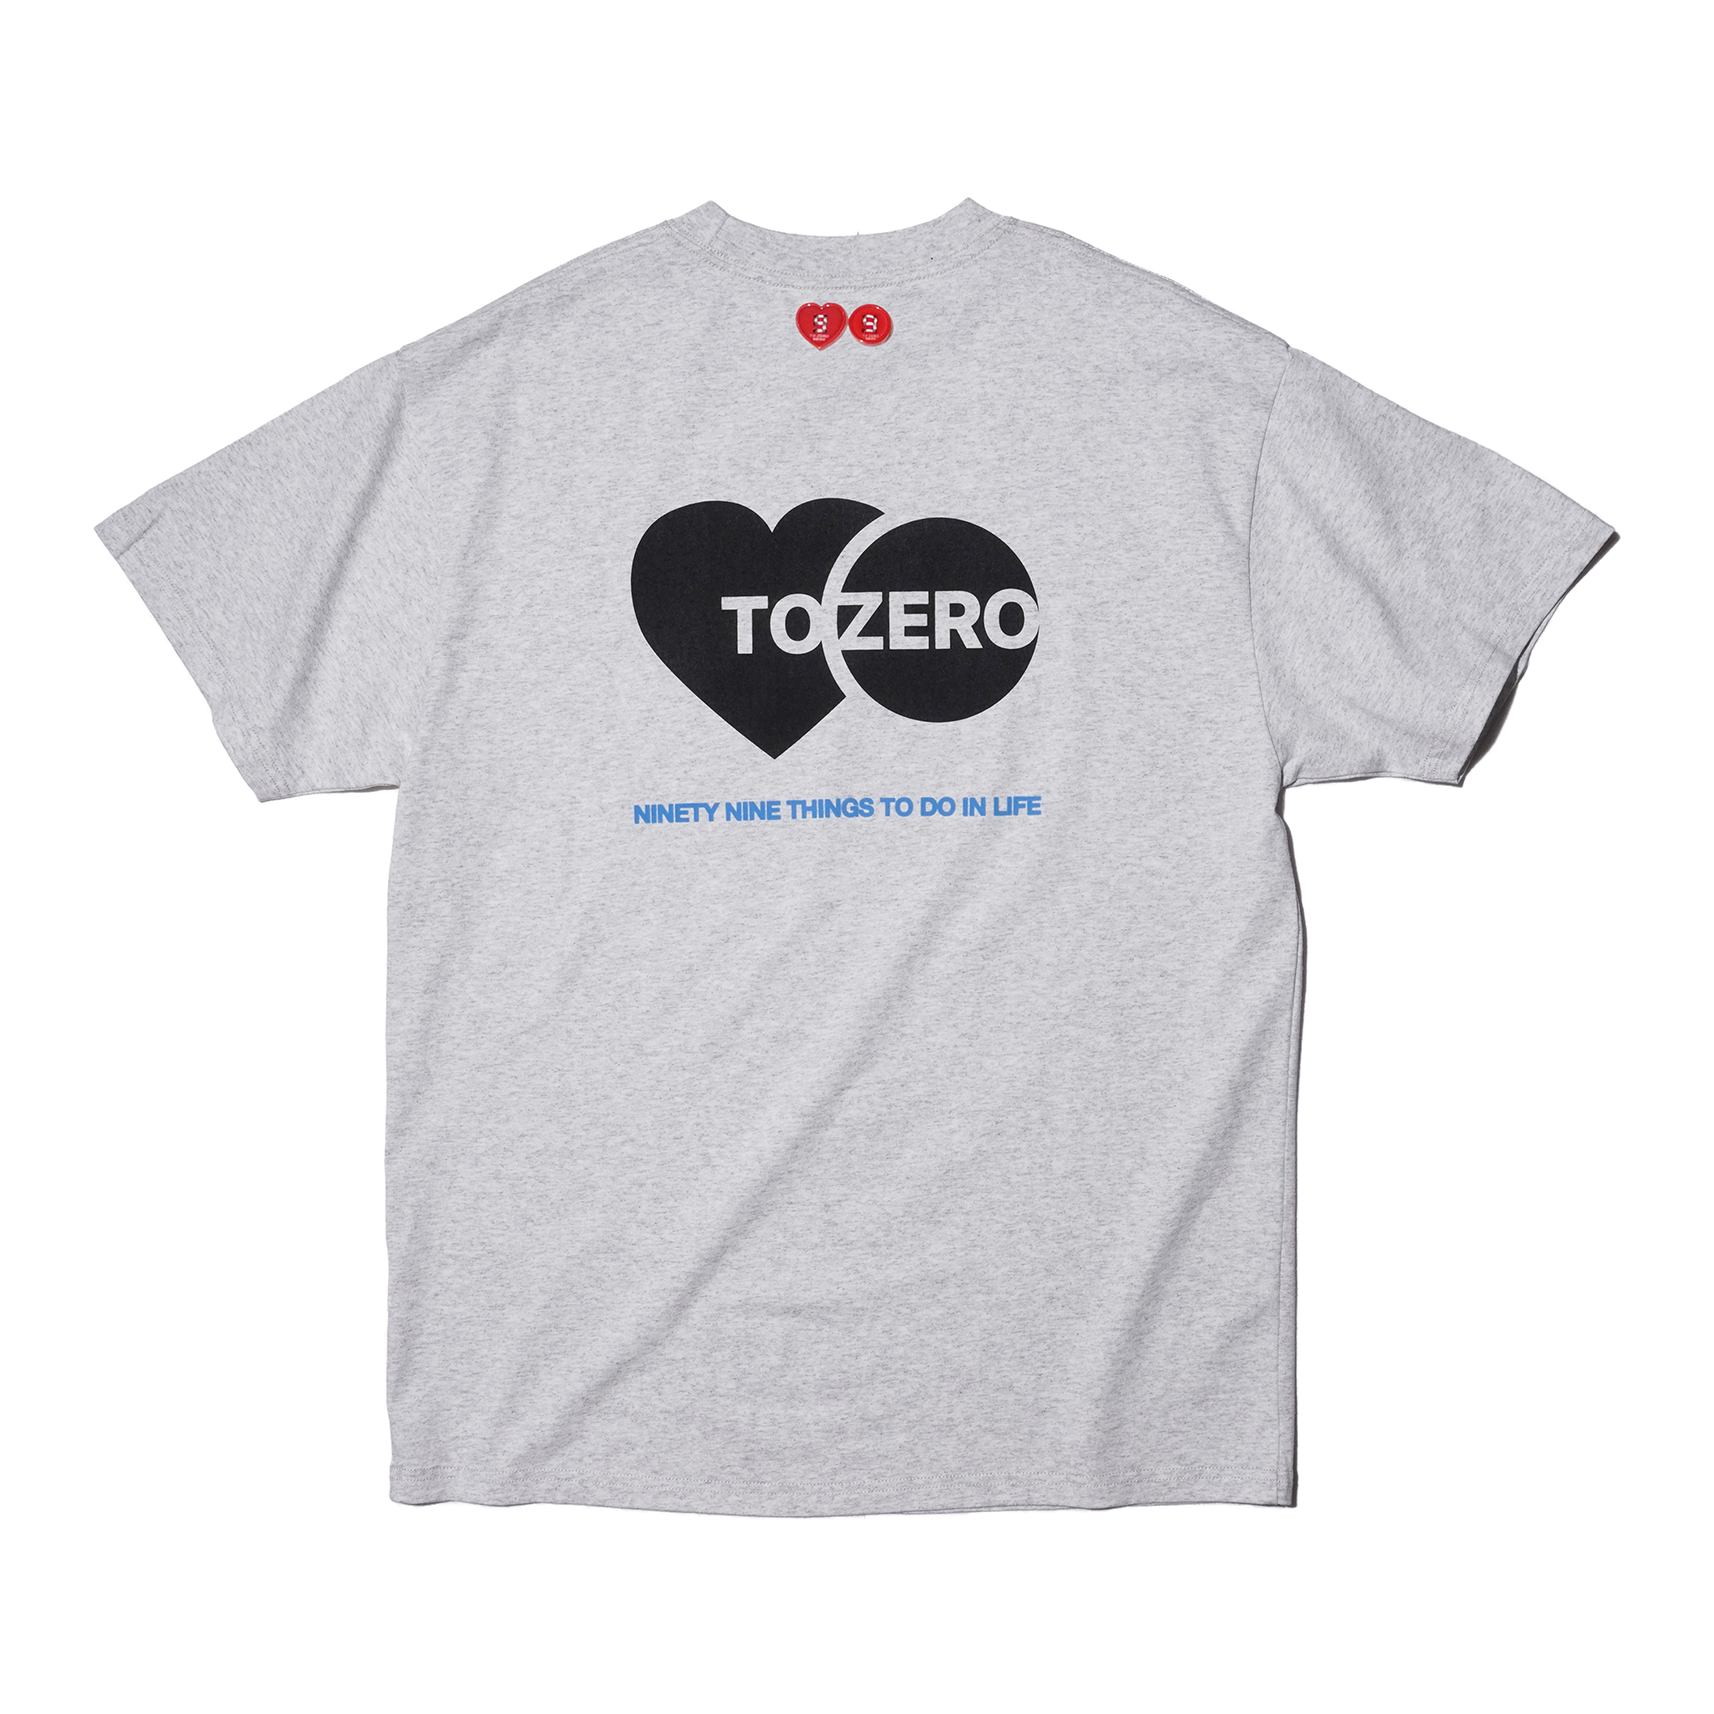 ‘TO ZERO’ logo print T-Shirt